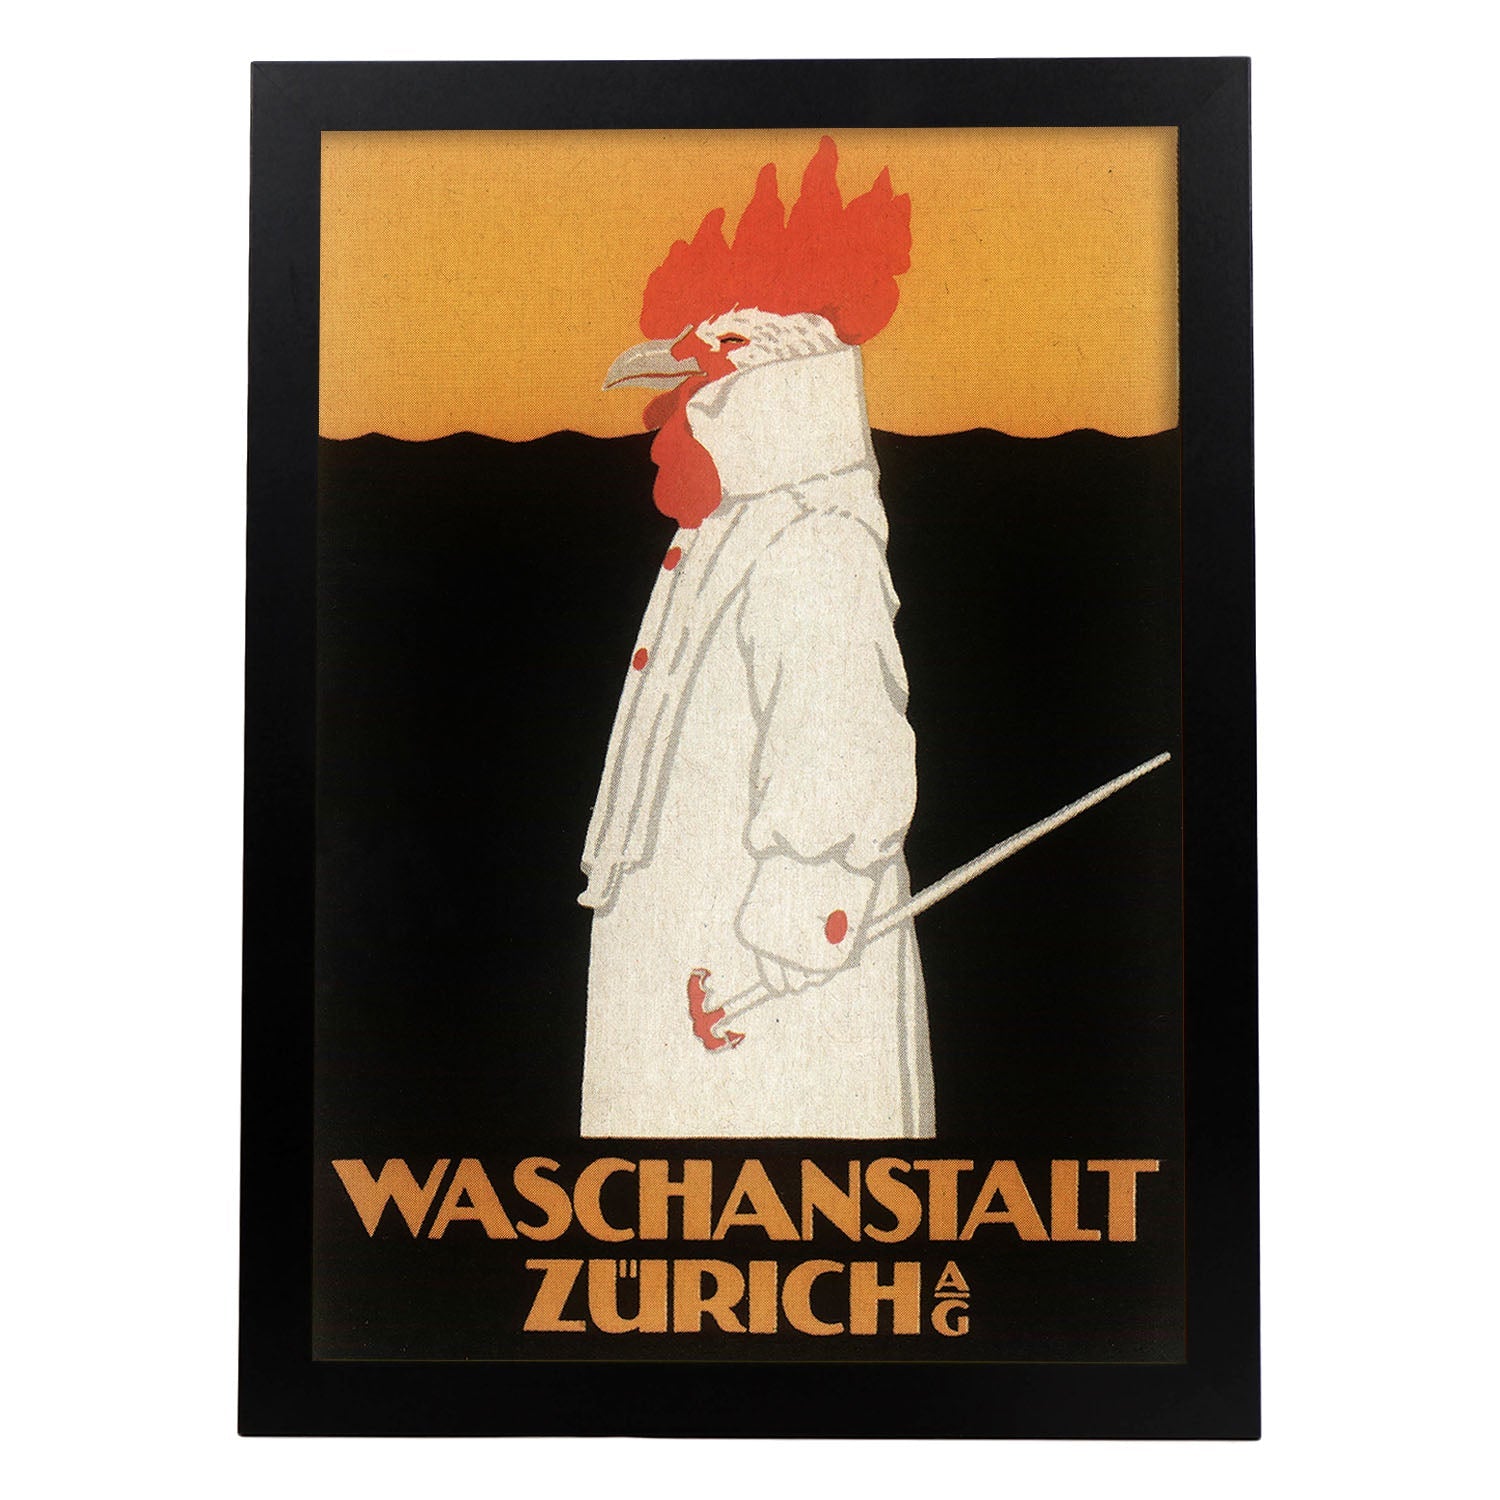 Poster vintage. Anuncio vintage Waschanstalt Zurich de 1905.-Artwork-Nacnic-A3-Marco Negro-Nacnic Estudio SL